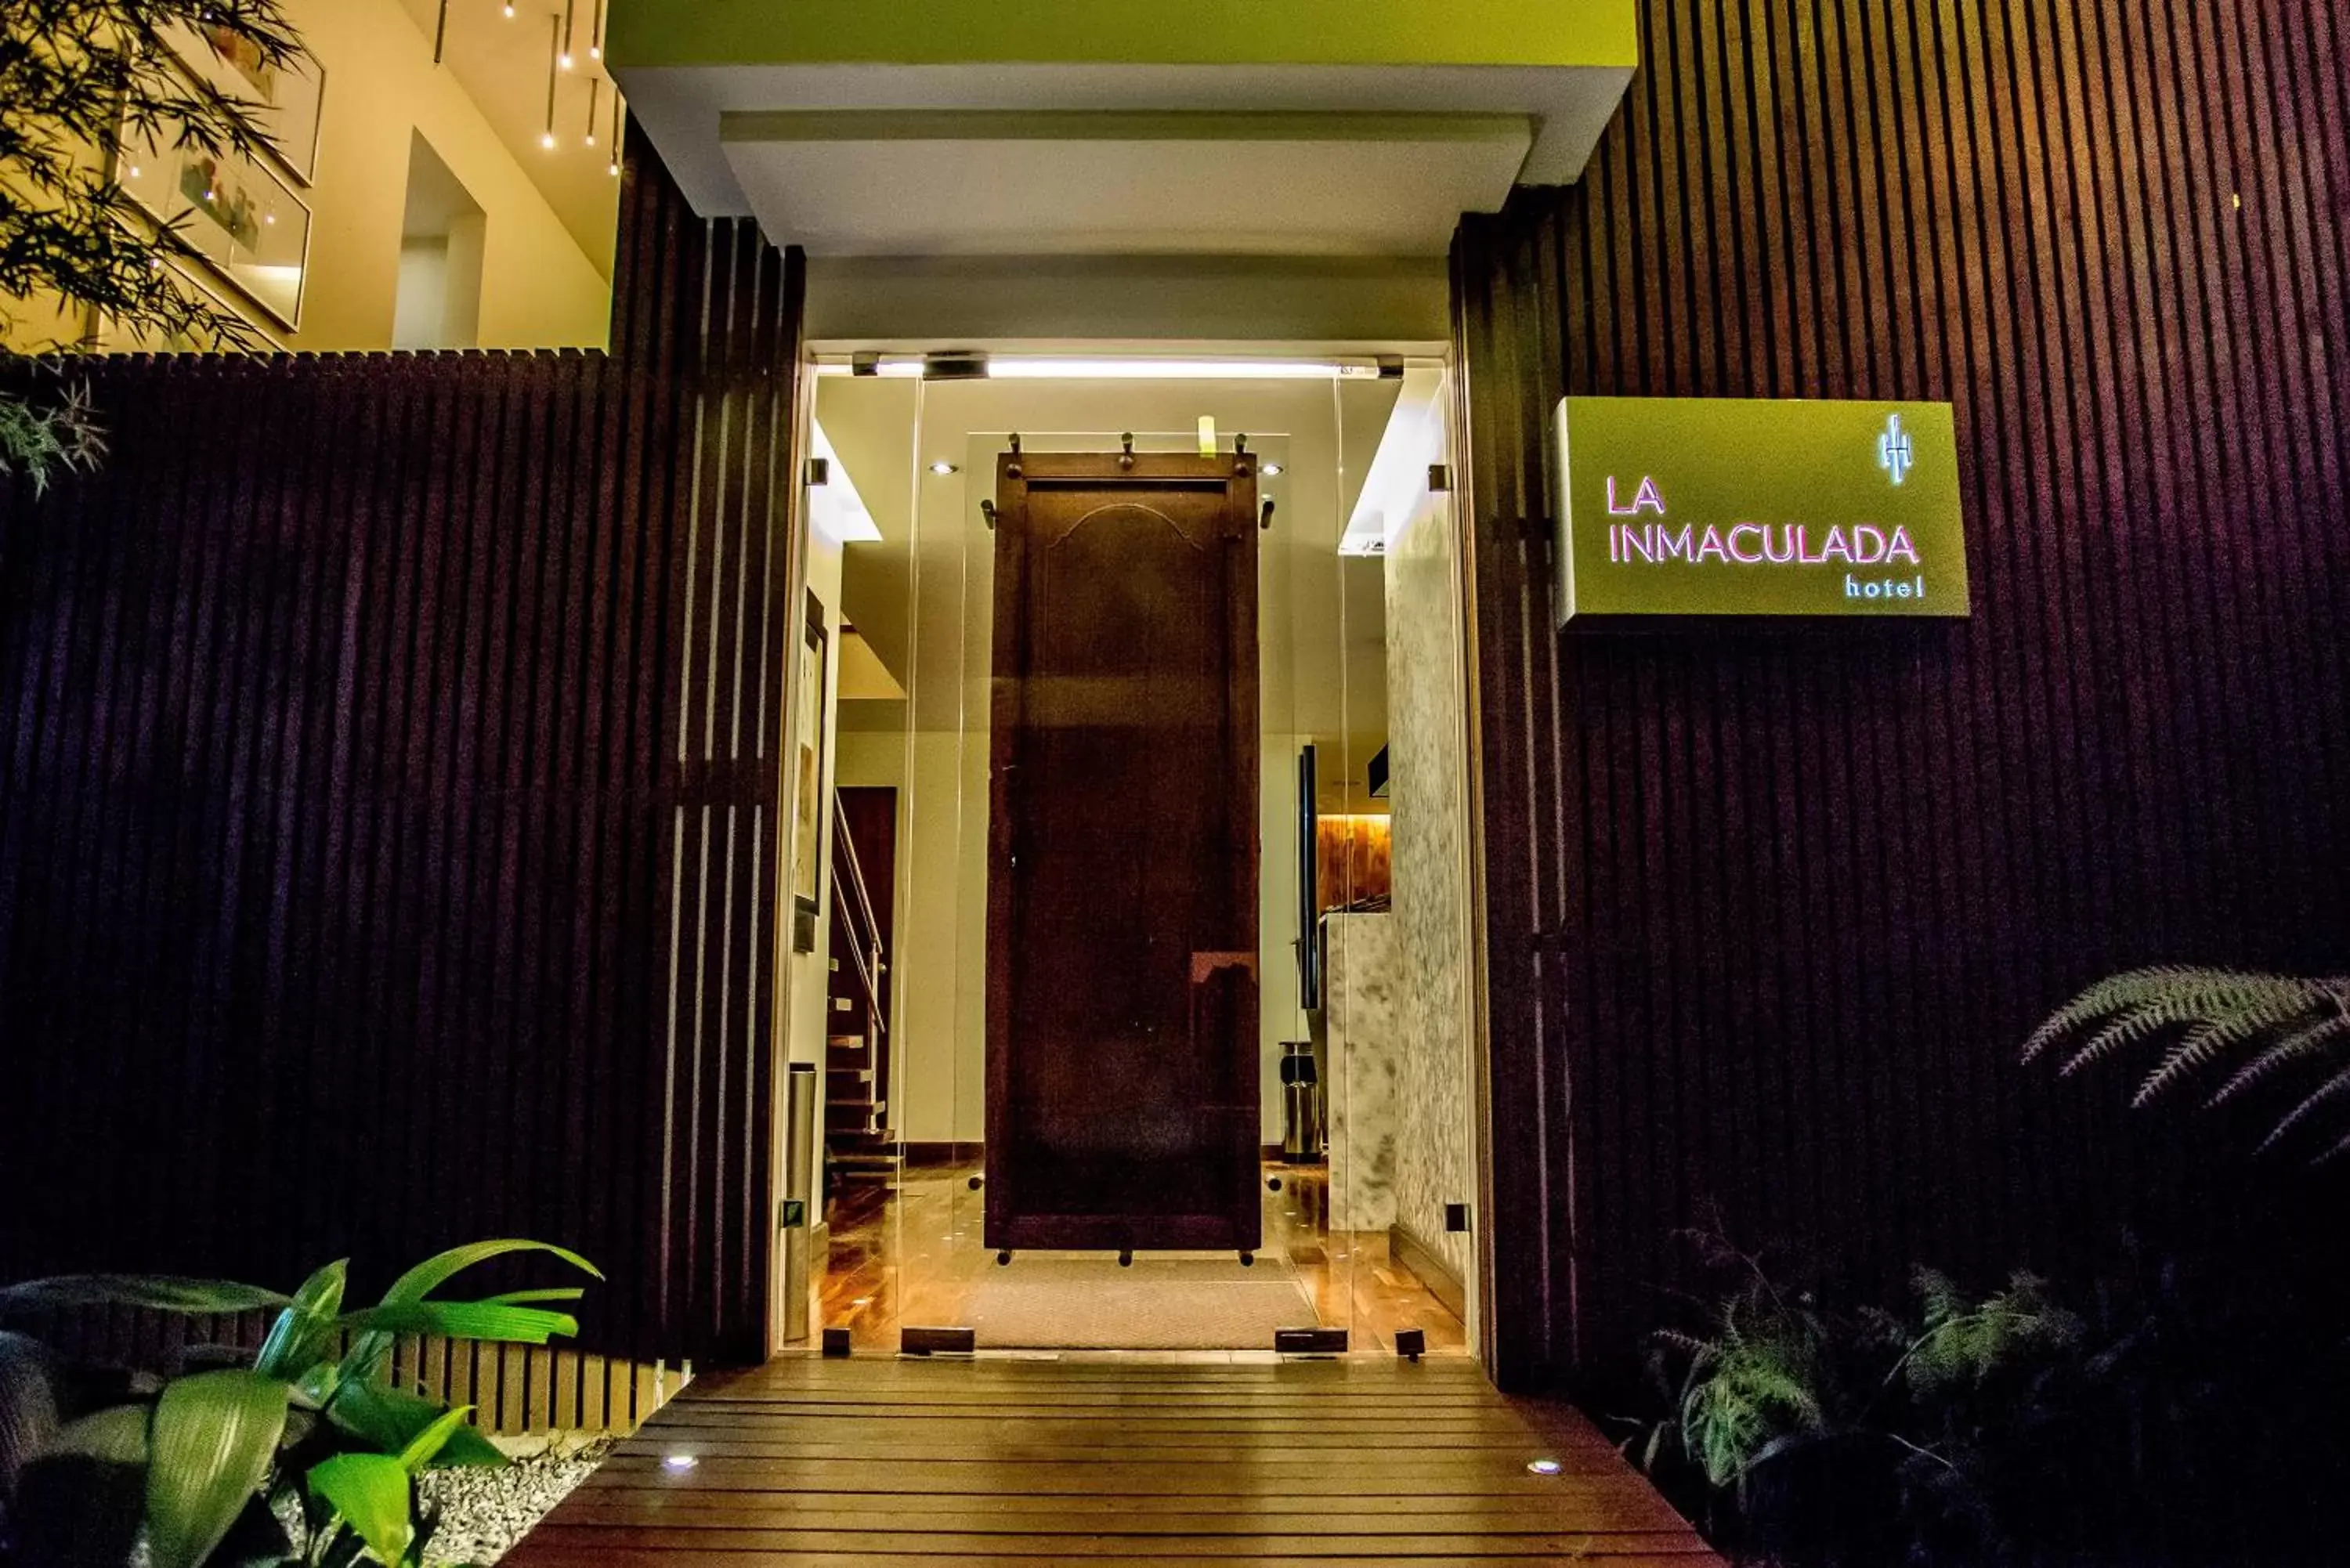 Facade/entrance in La Inmaculada Hotel